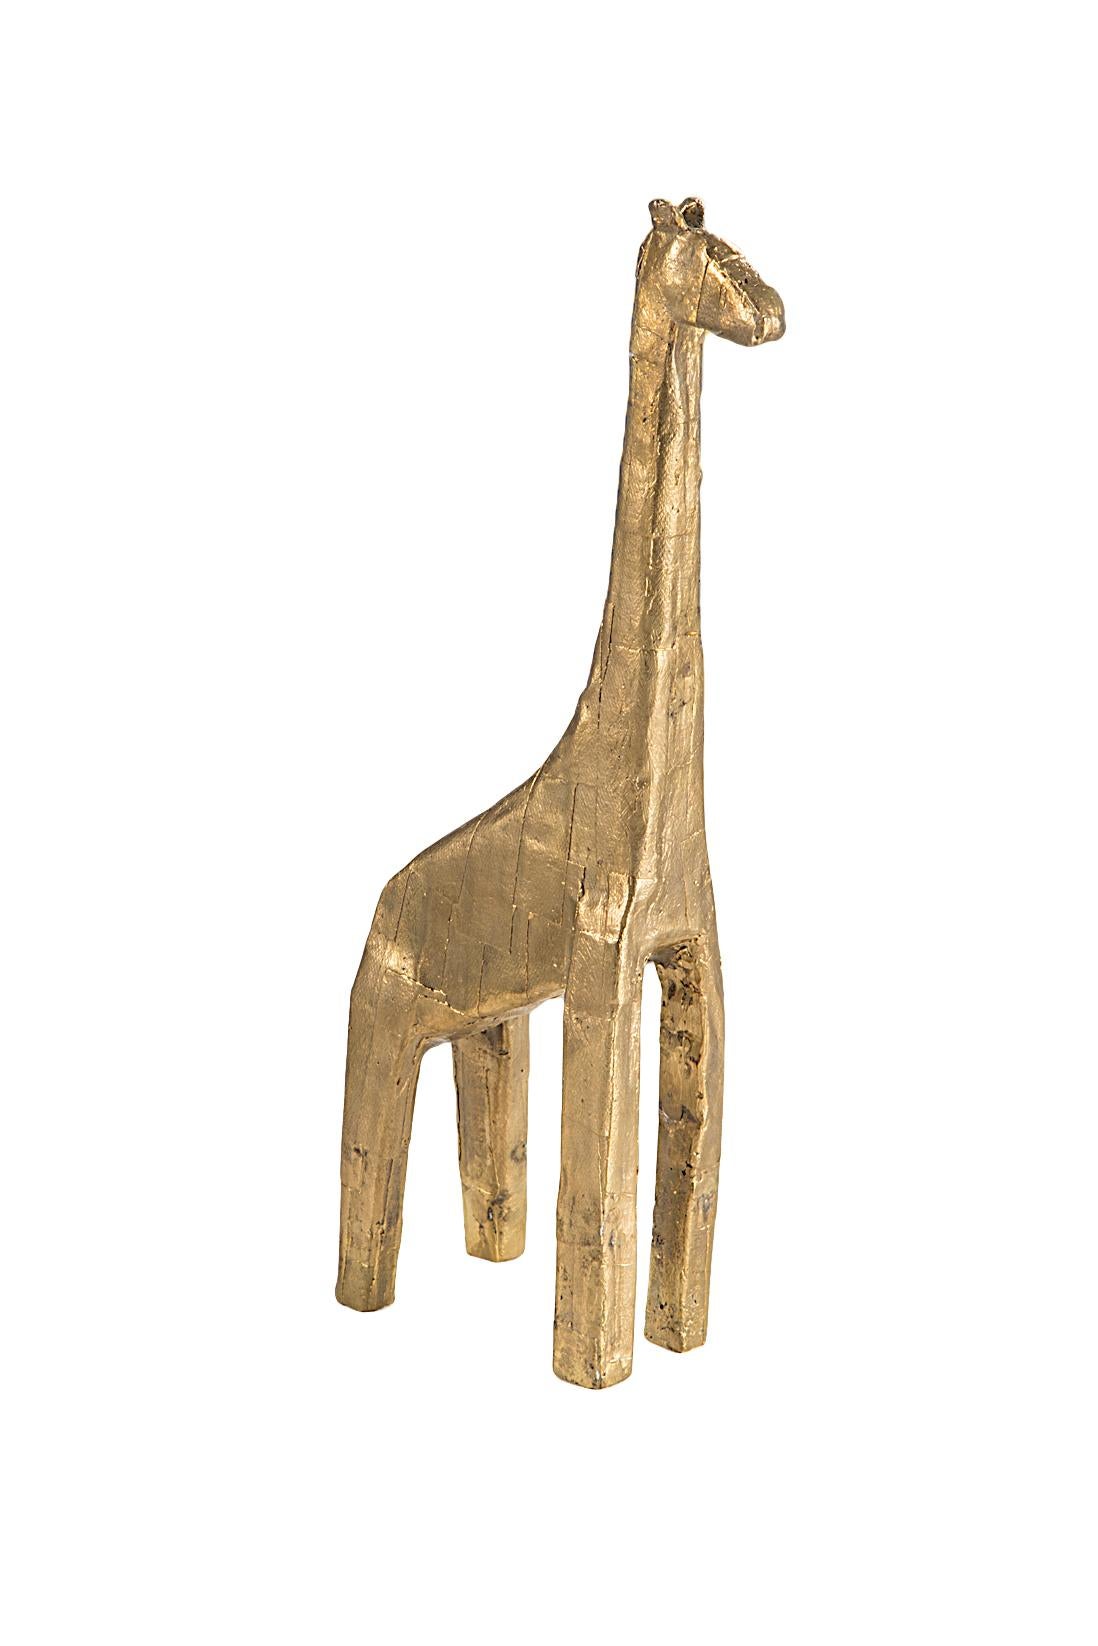 Sculpture de girafe de Pulpo
Dimensions : D12 x L6 x H28 cm
Matériaux : bronze

Un Crash, une tour, un troupeau. Quel que soit le nom que l'on donne à ce groupe, il est tout simplement à sa place. Stimulé par des explorations dans la nature et